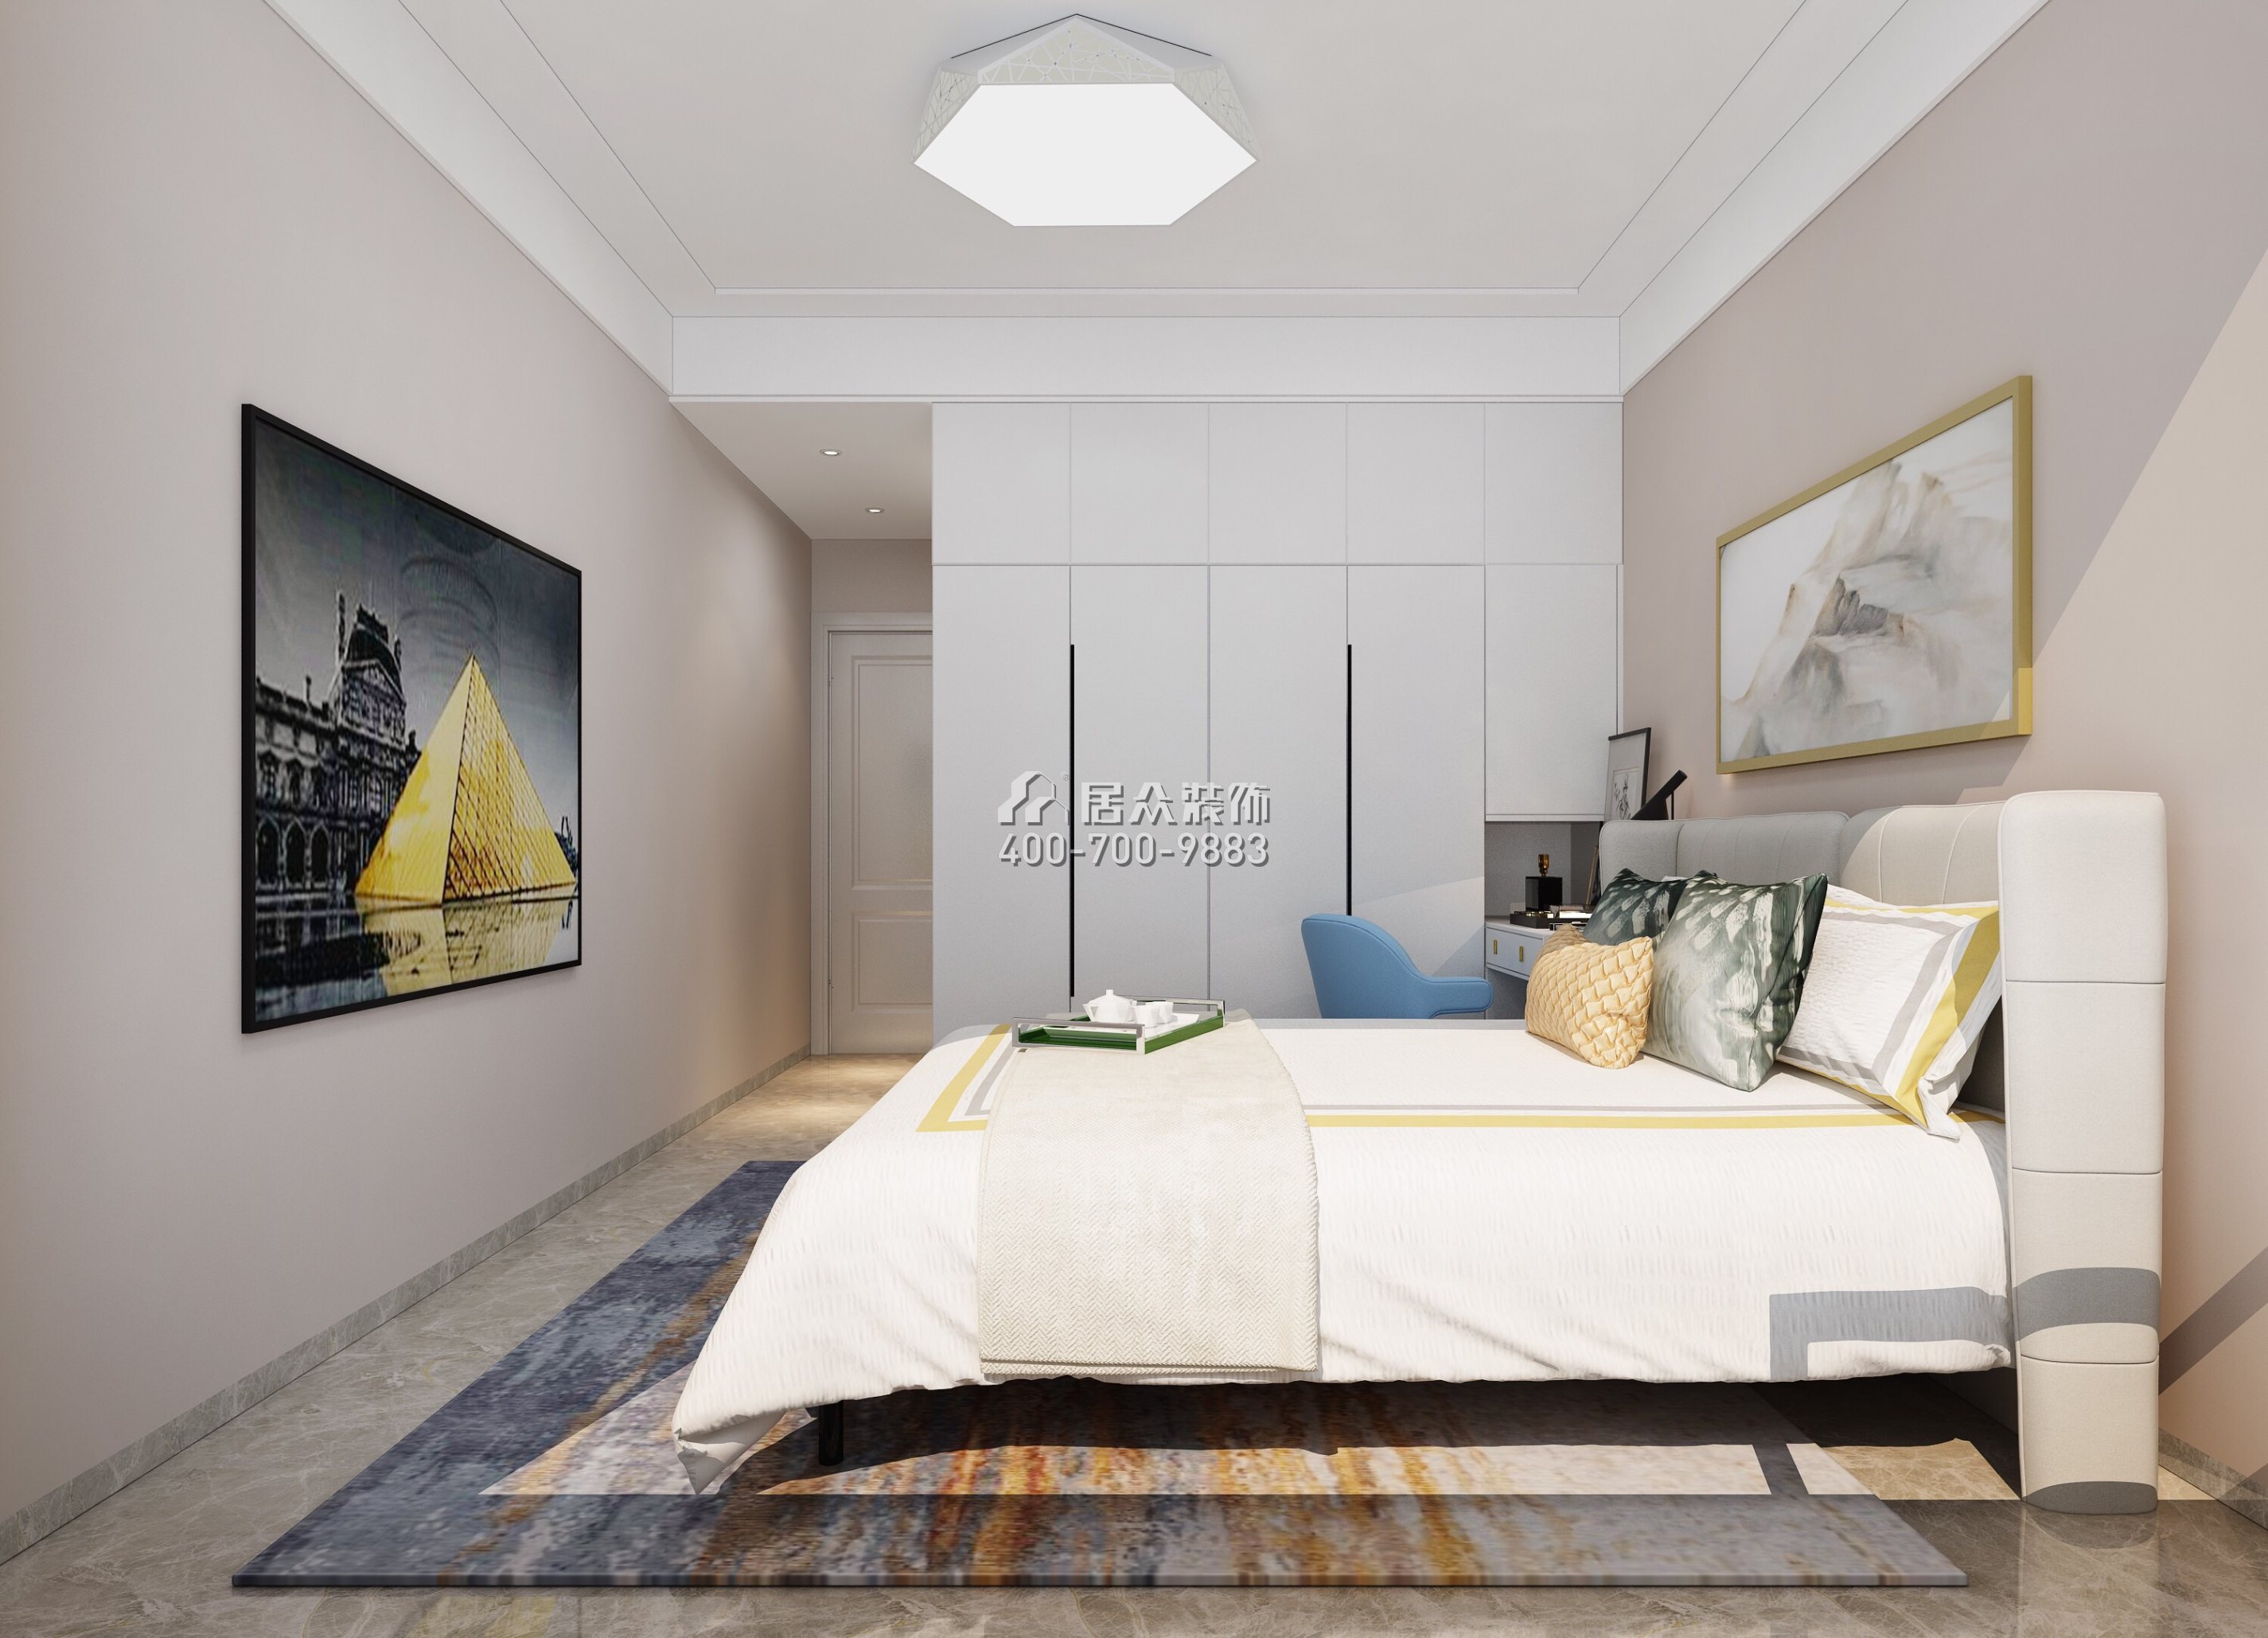 海印長城110平方米現代簡約風格平層戶型客廳裝修效果圖